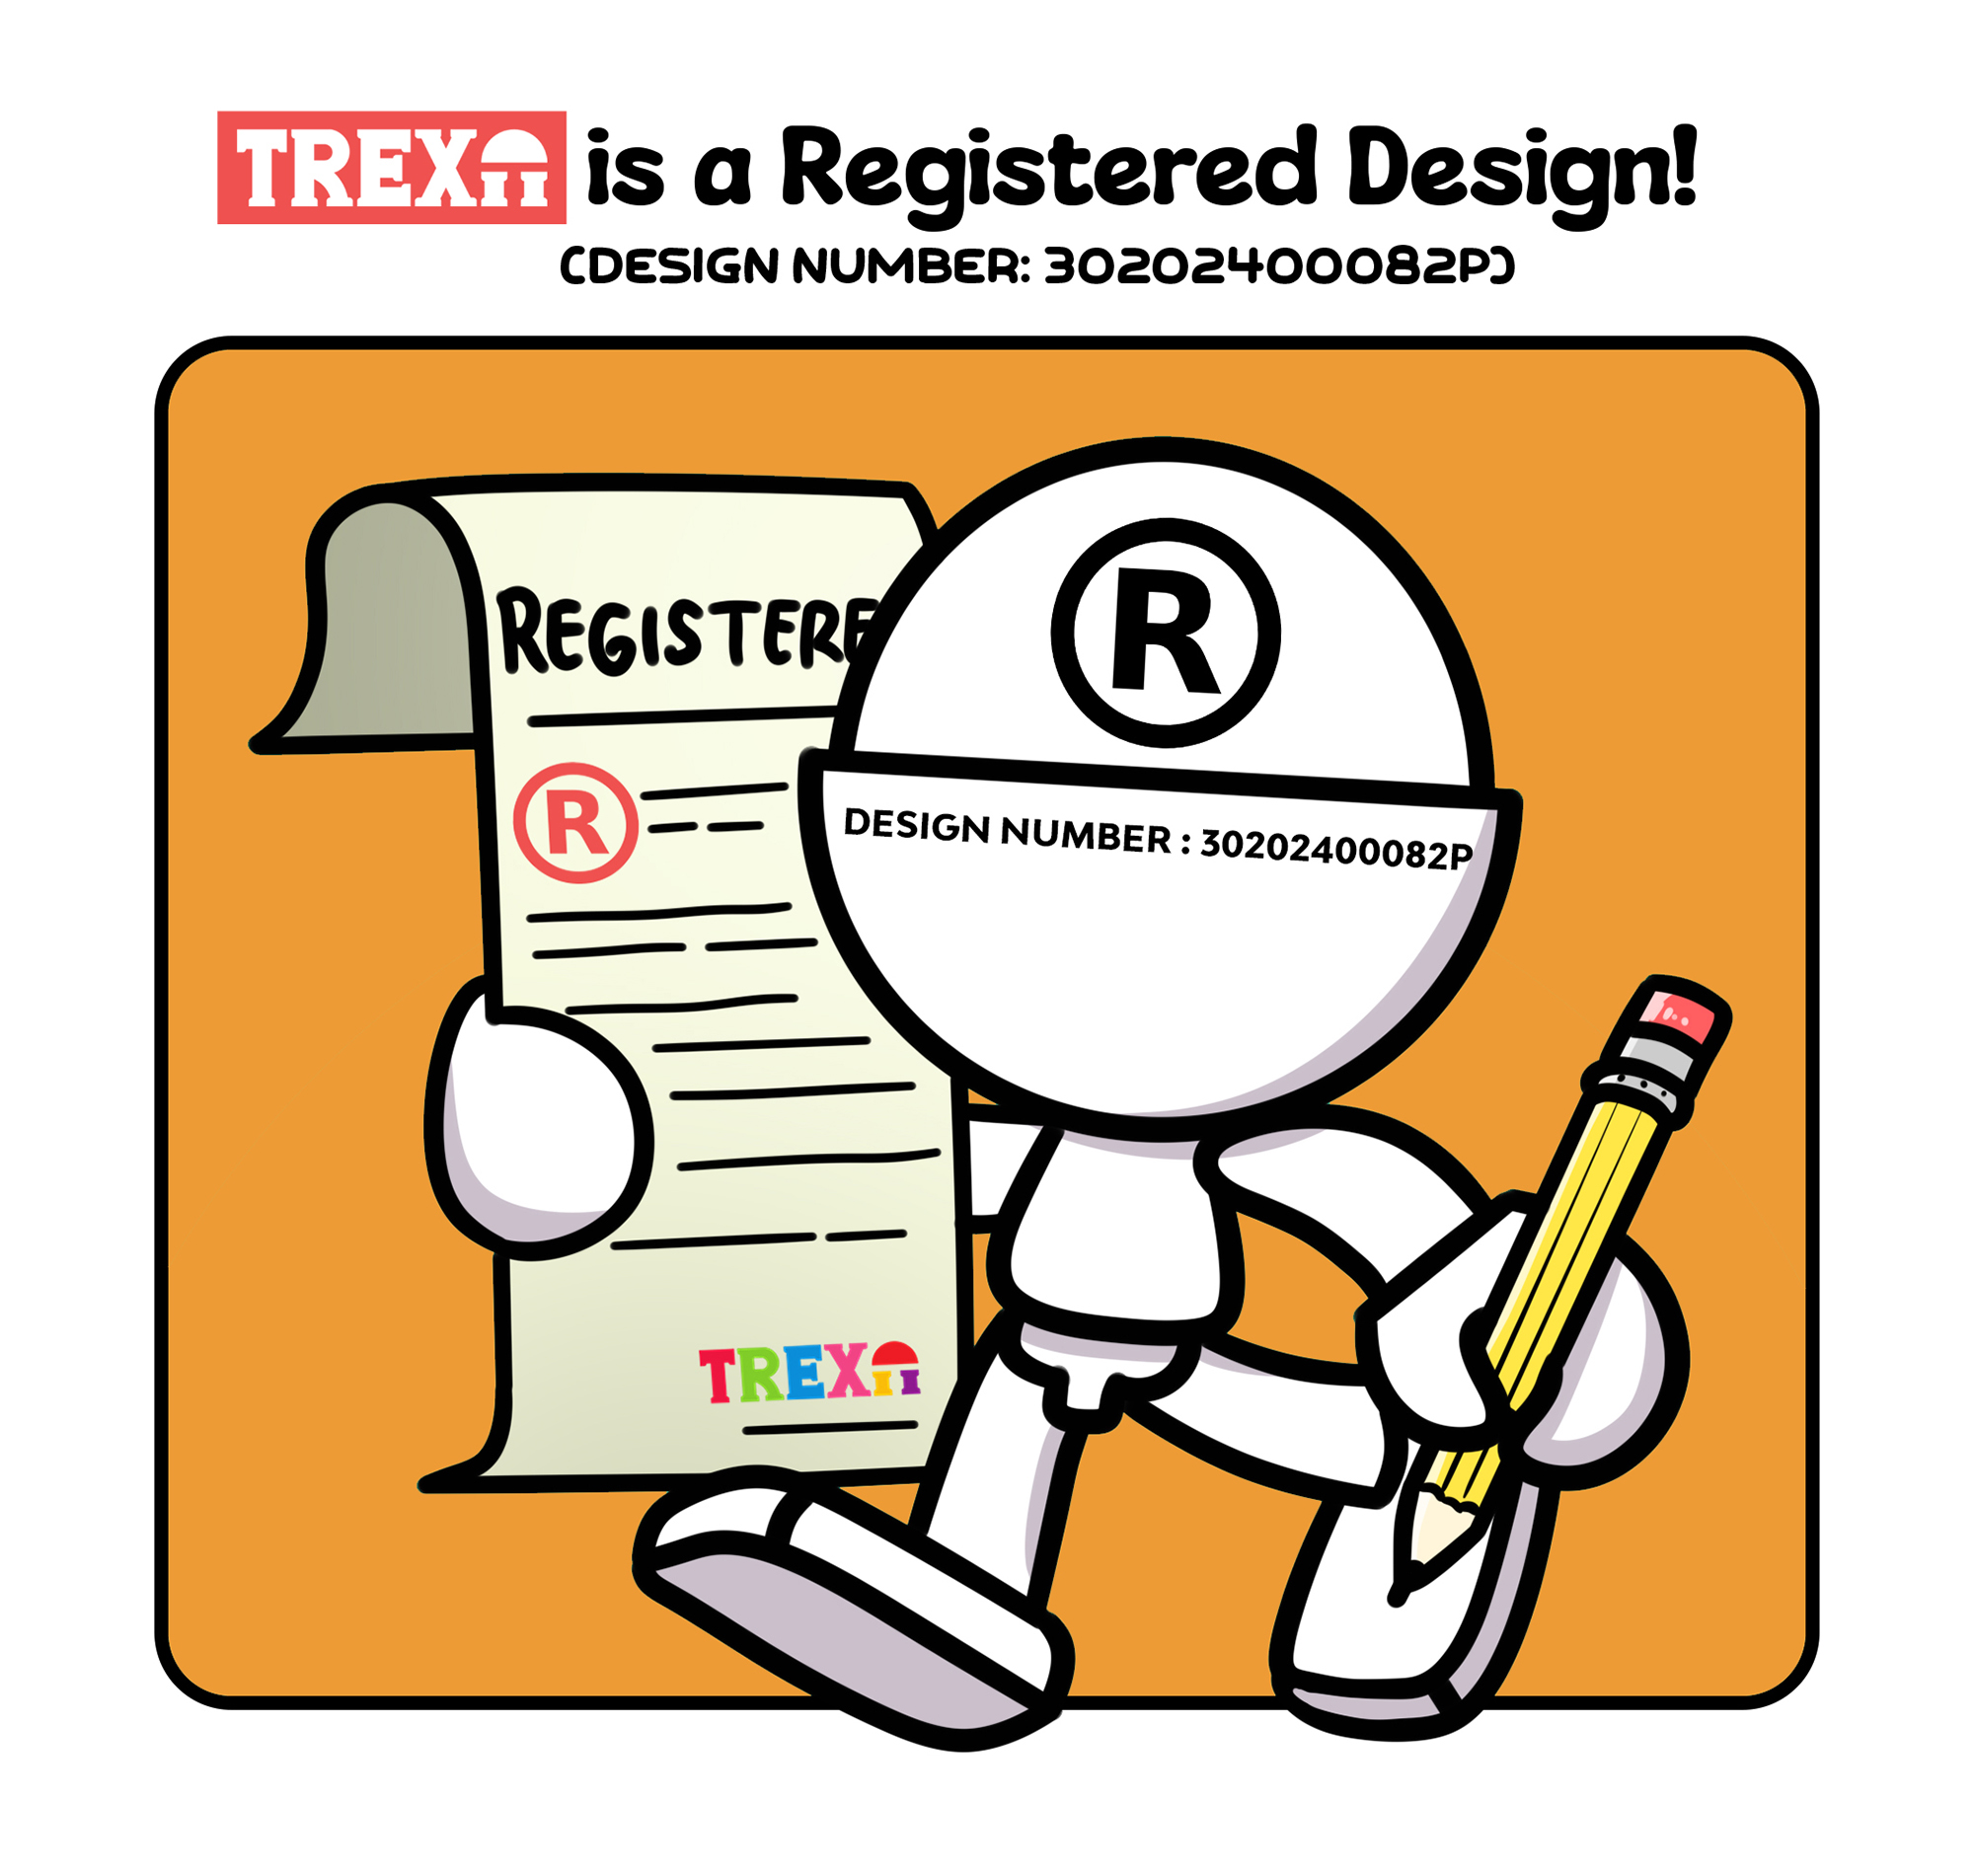 Trexii is a Registered Design_Orange